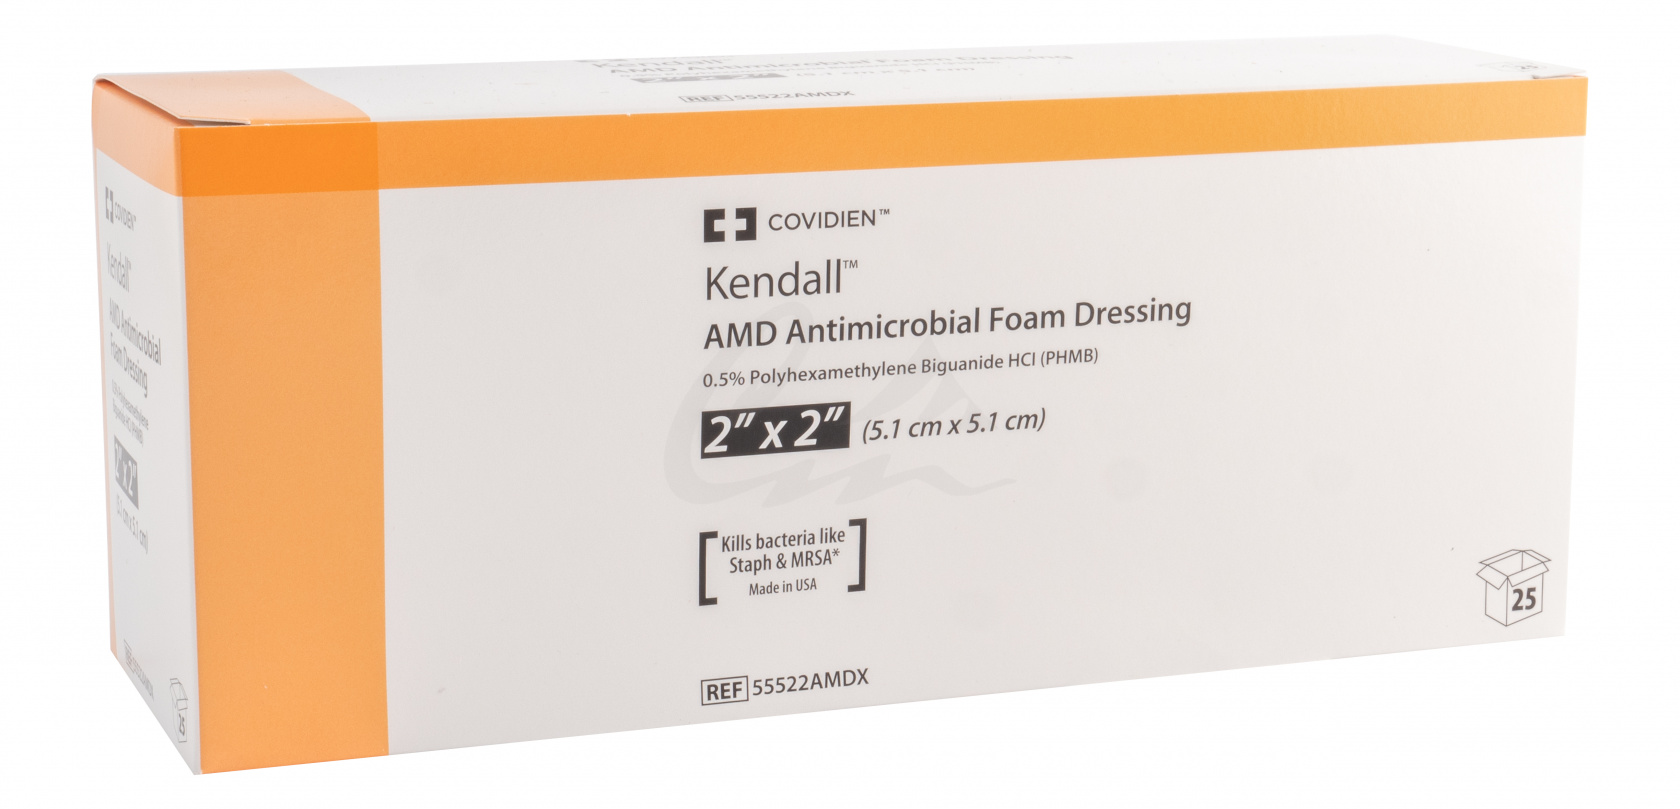 Foam Dressing AMD Kendall 5cm x5cm